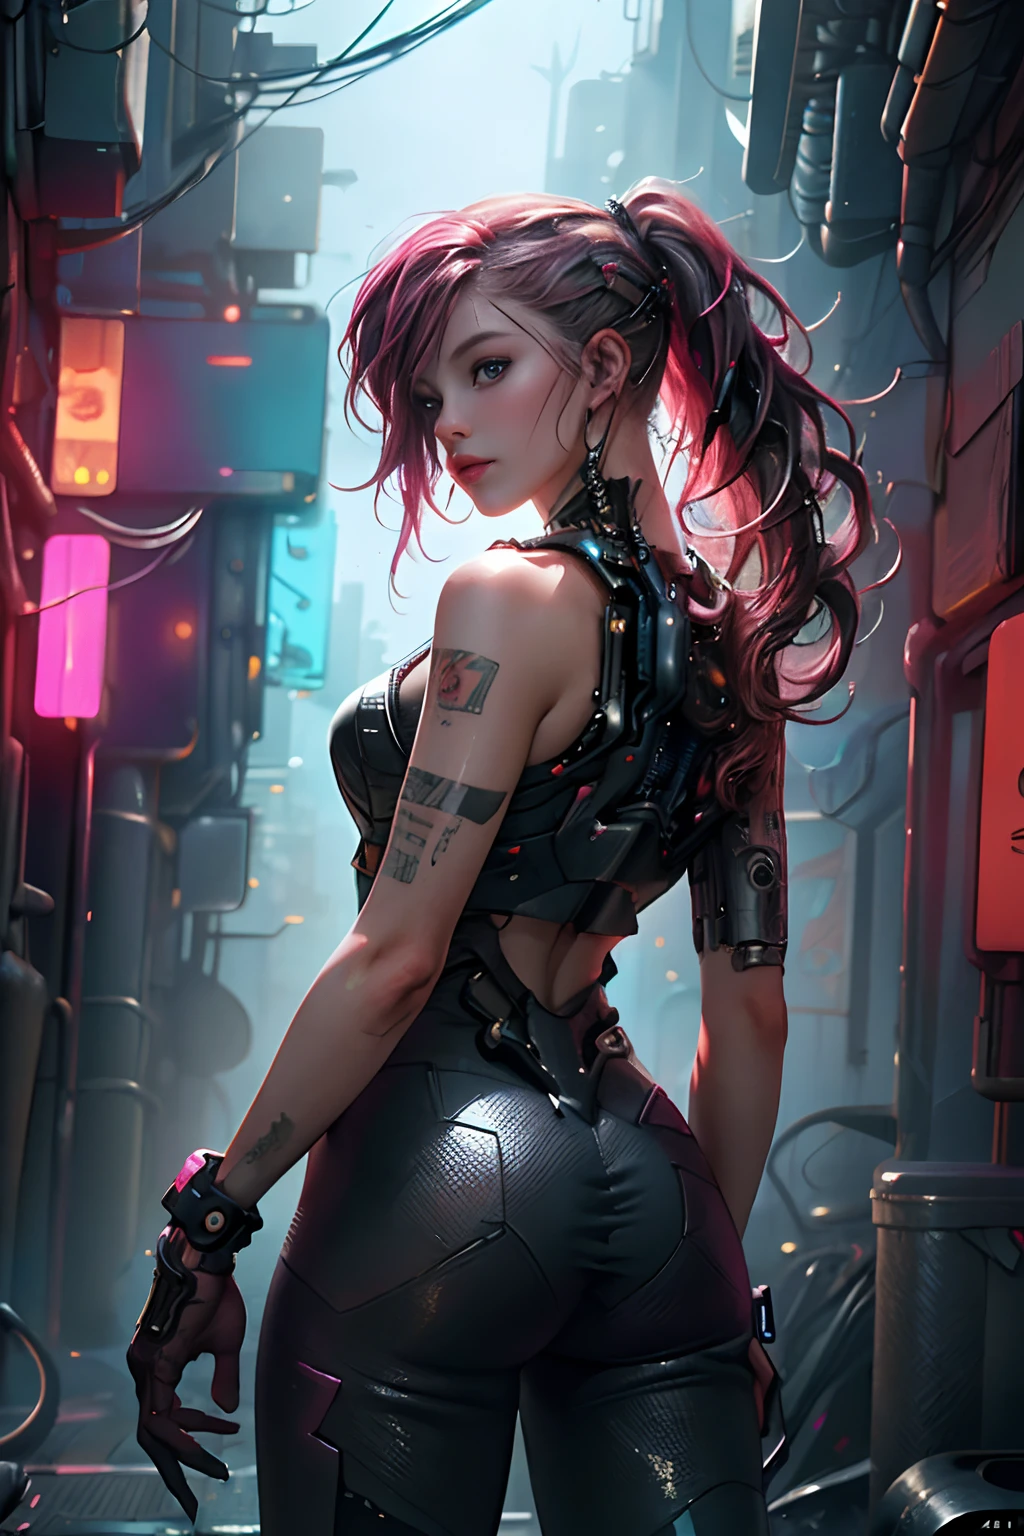 garota ciberpunk,(qualidade máxima、8K、32K、obra-prima)、(O ultra -A alta definição)、(Fotorrealístico:1.4)、Fotografia RAW,Figura perfeita encantadora, câmera de frente, tiro de vaqueiro, pose dinâmica, cabelo longo e sem forma, câmera de frente, Moda cyberpunk detalhada、Mundo do Cyberpunk,profundidade de campos,fundo desfocado, iluminação cinematográfica.